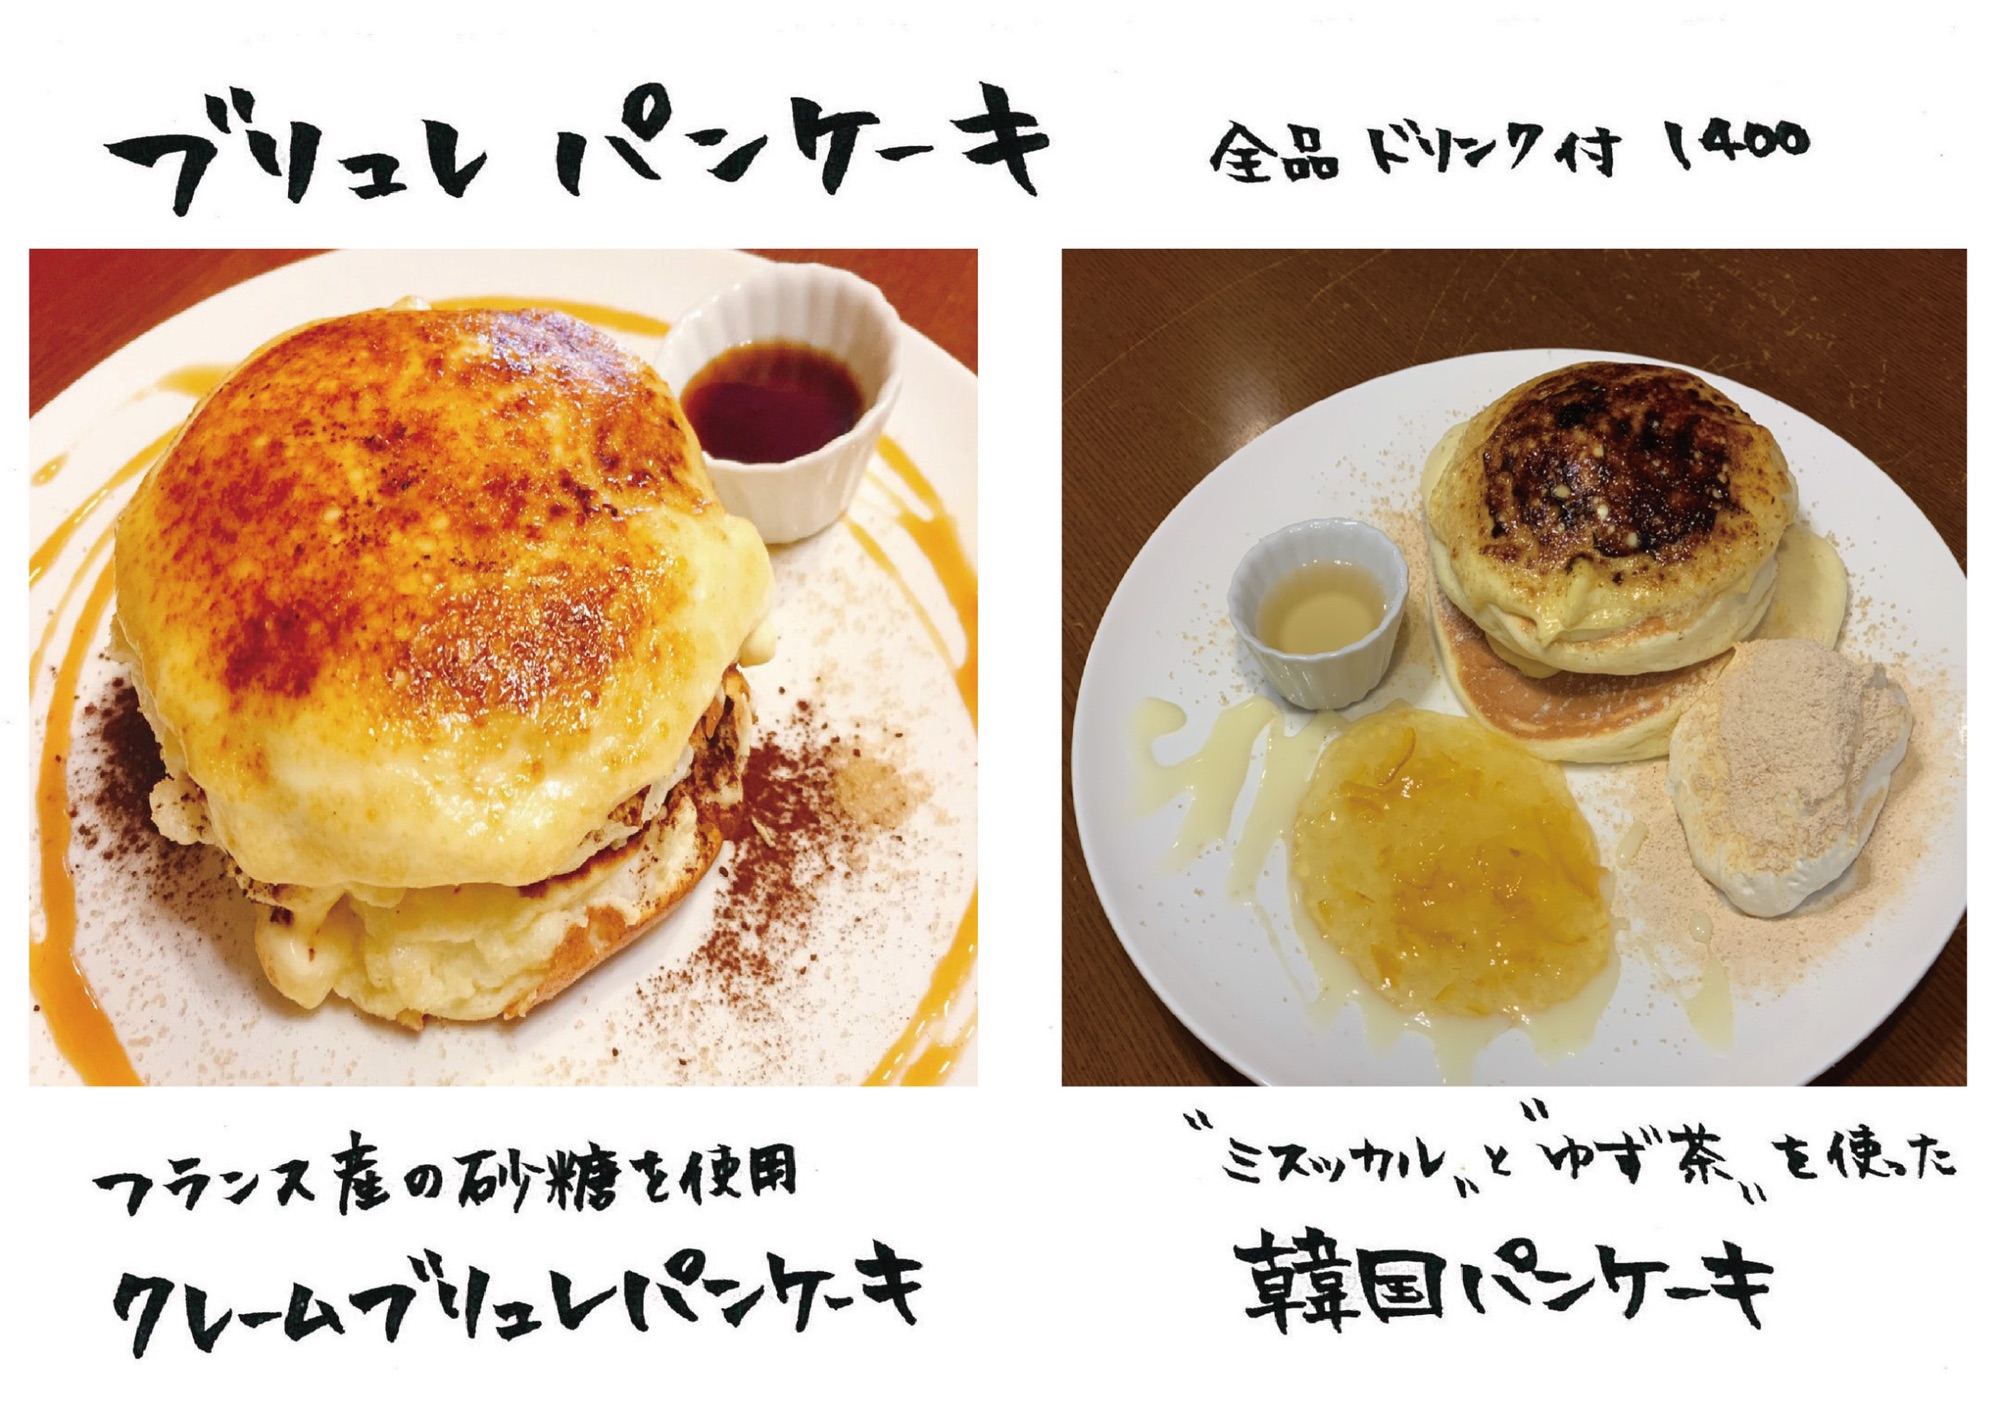 4 11新メニュー Hana Cafe Yokkaichi